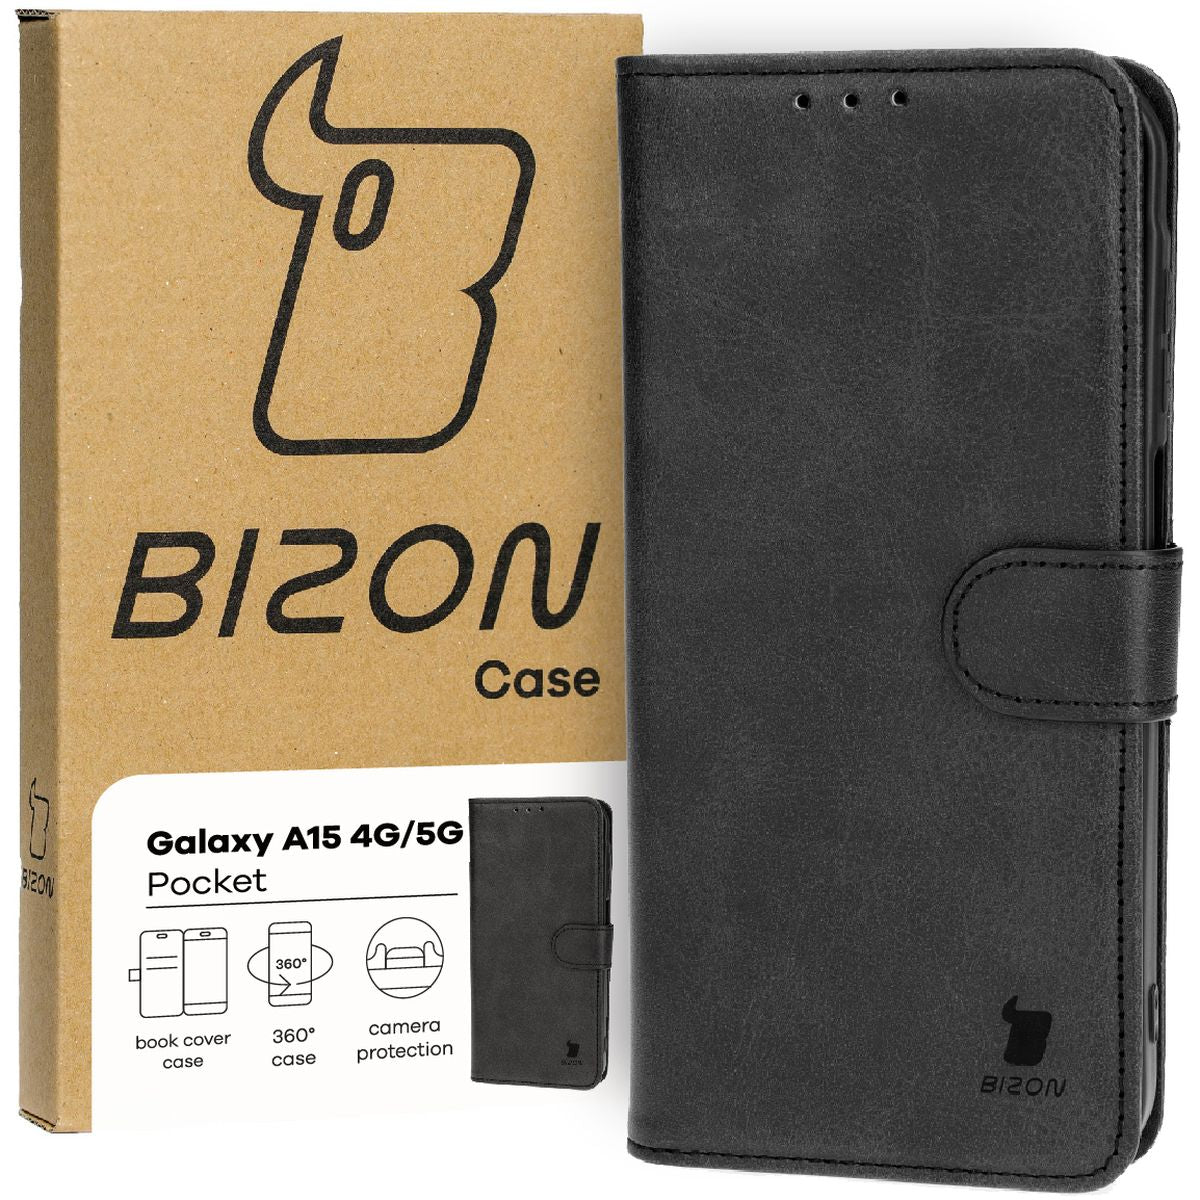 Schutzhülle für Galaxy A15 4G/5G, Bizon Case Pocket, Schwarz